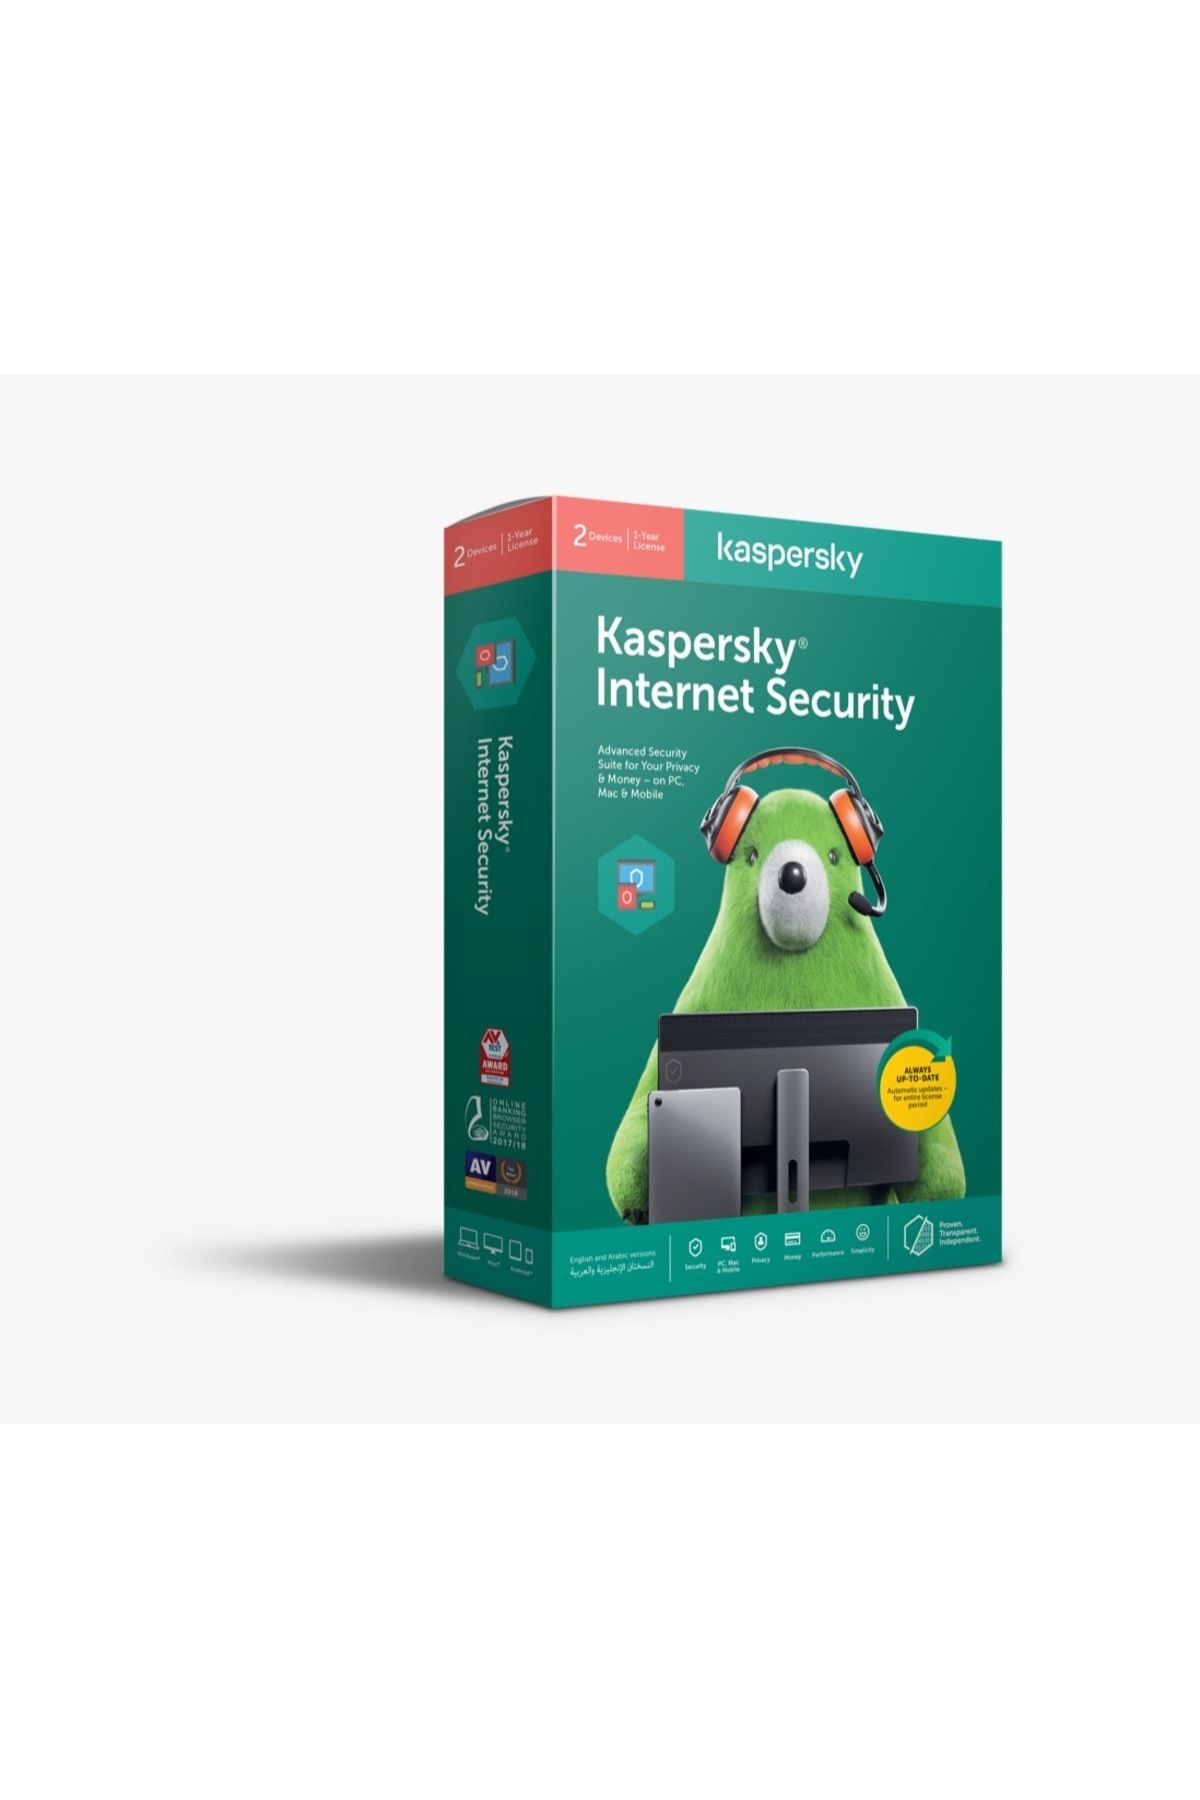 Kaspersky İnternet Security 5 Cihaz 2 Yıl